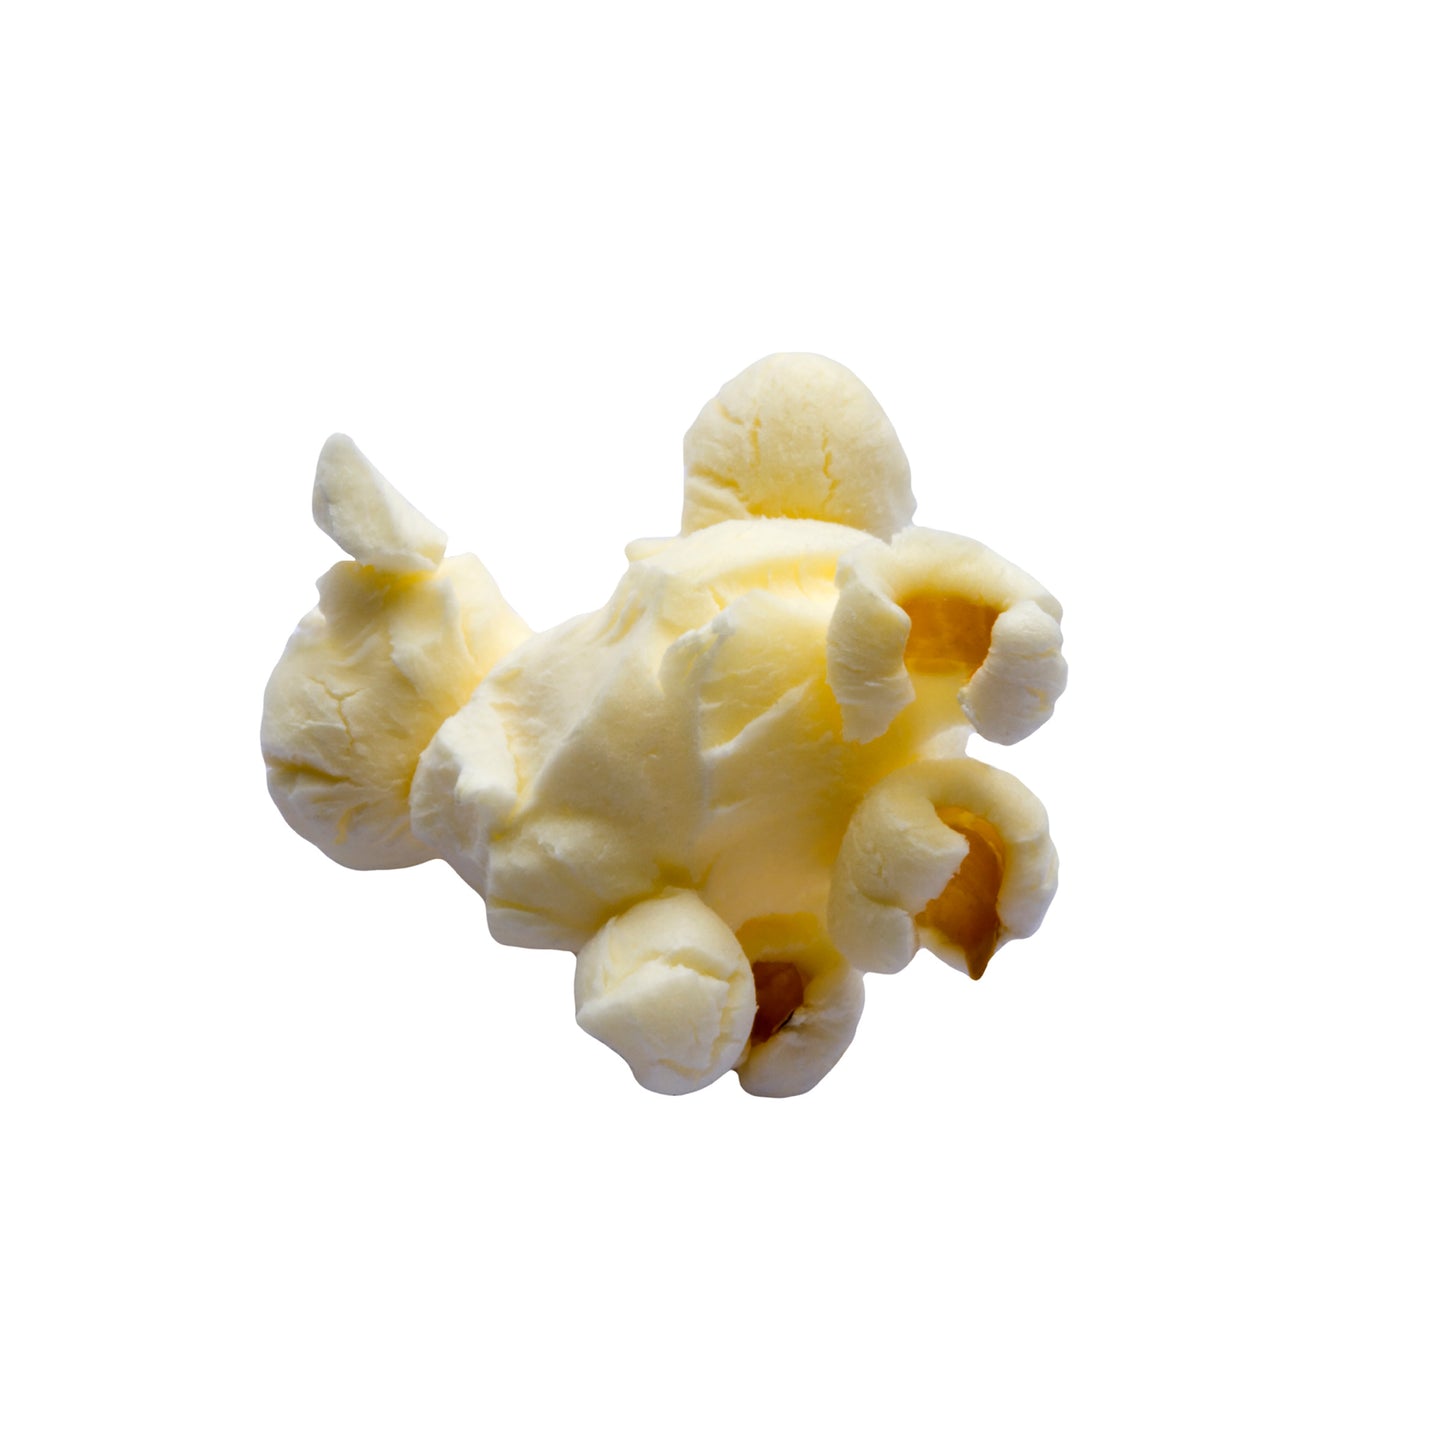 Yellow Popcorn Kernels - 12.5 Pound Bulk Bag